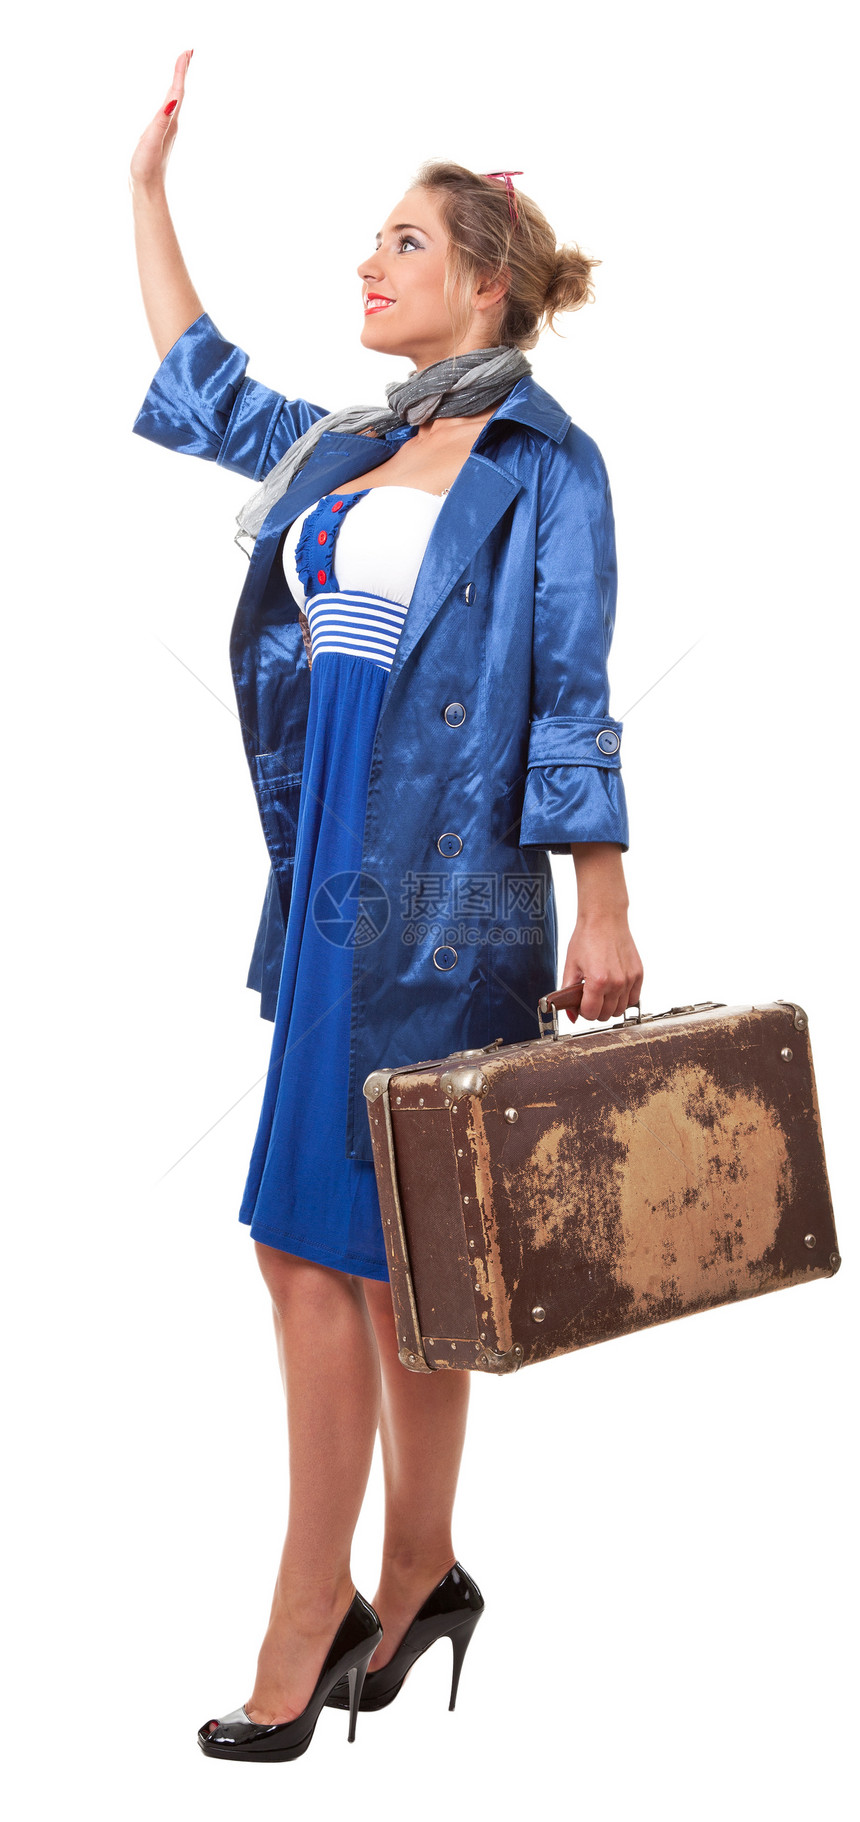 单身单身妇女旅行便车女士衣服乡愁女性风格行李白色围巾历史图片